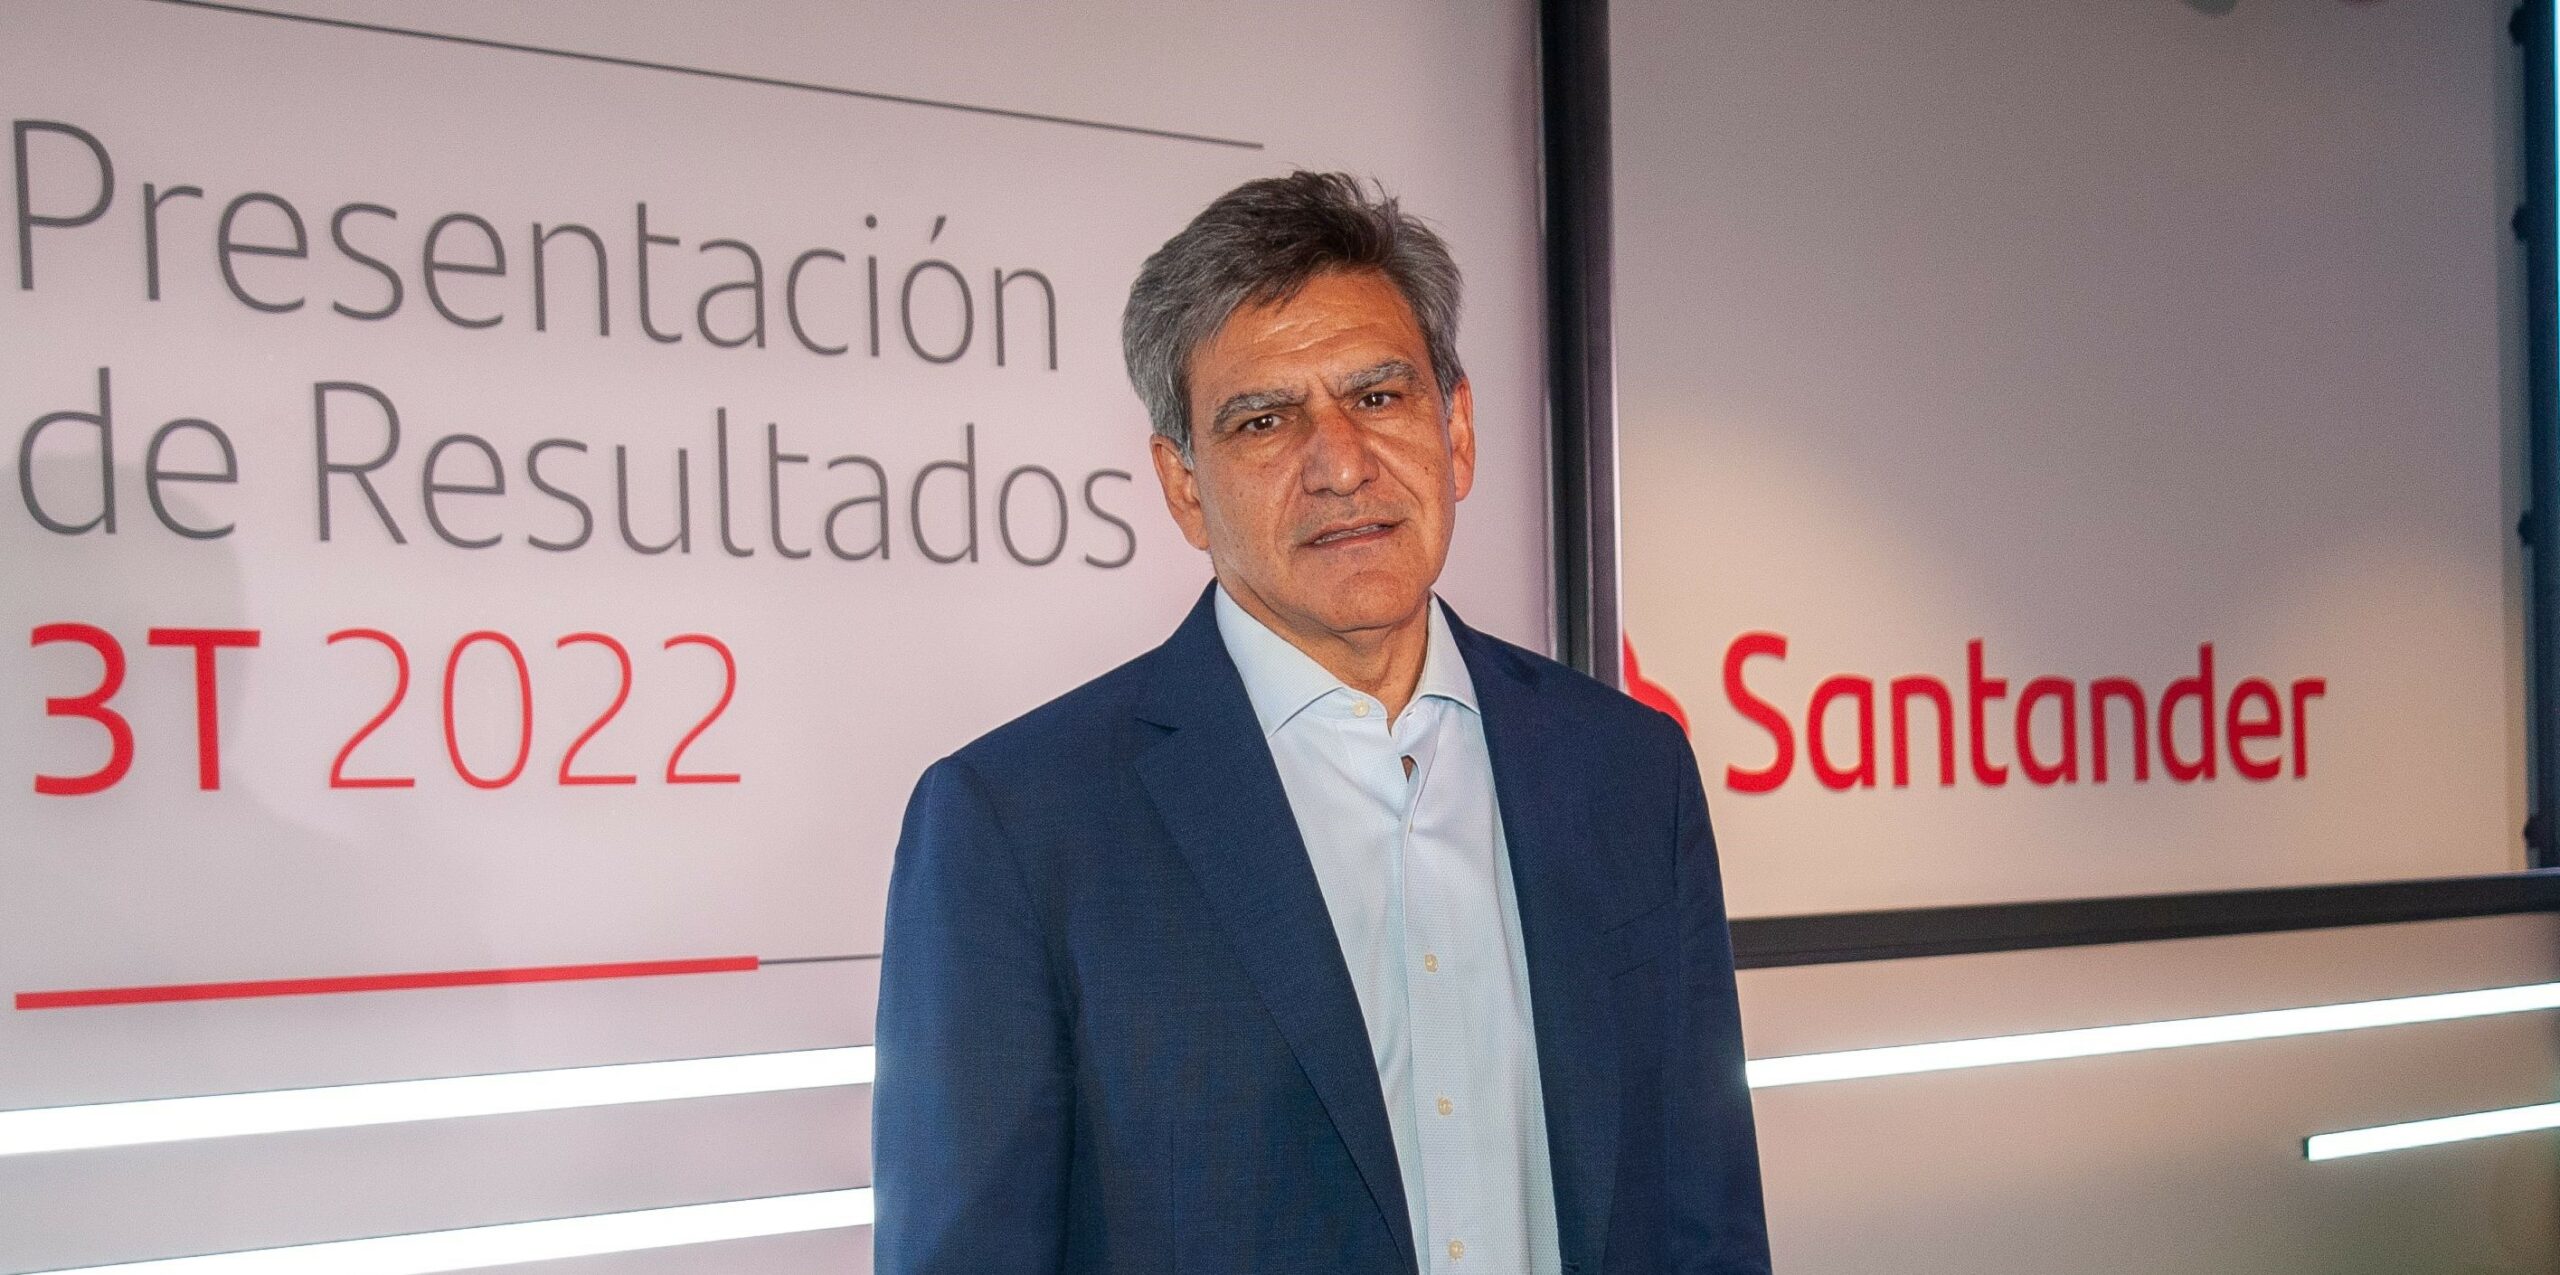 El Banco Santander gana el récord de 7.316 millones y se ofrece a ayudar a familias y empresas